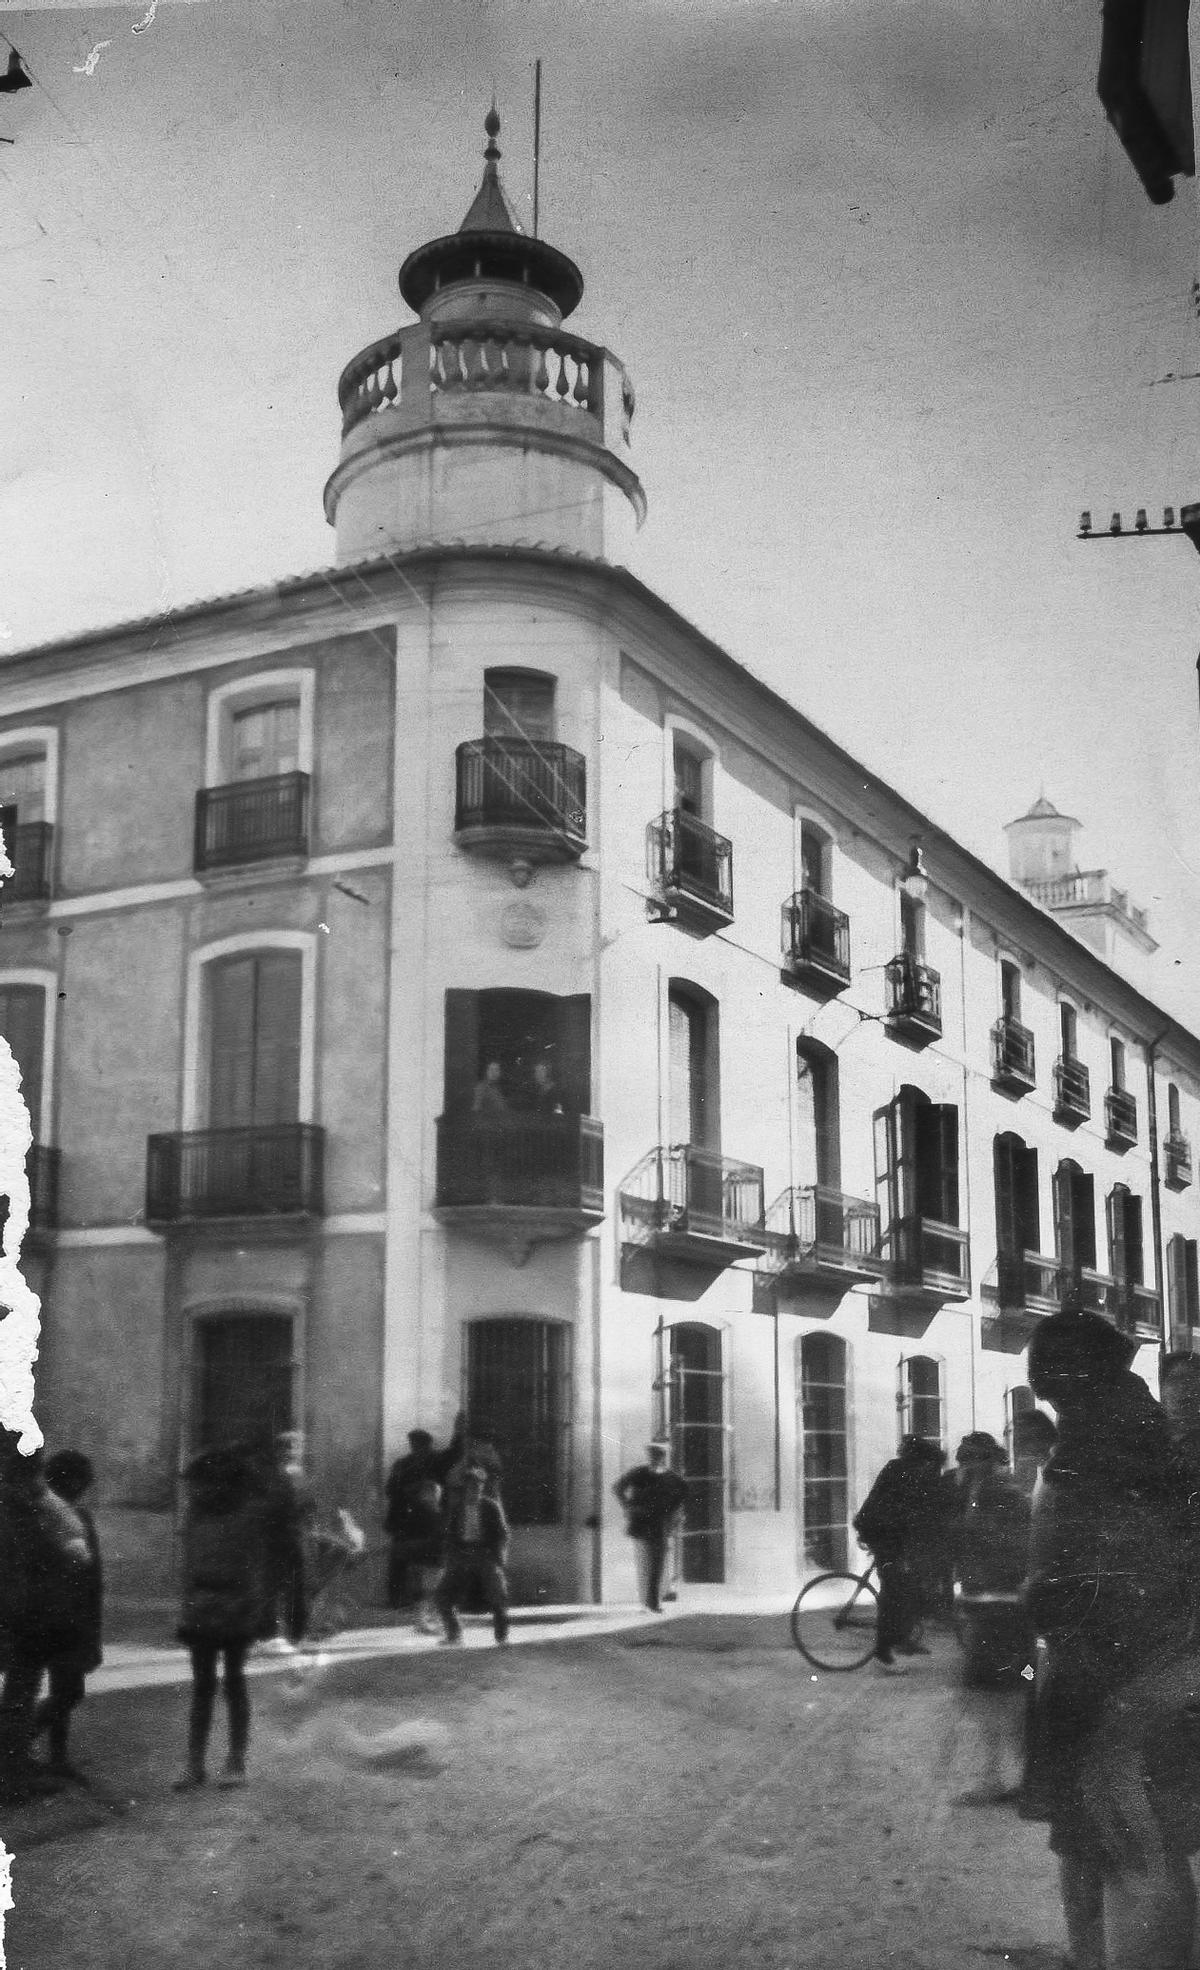 La efervescencia urbana de Pego y la histórica casa modernista, plasmadas en una antigua foto